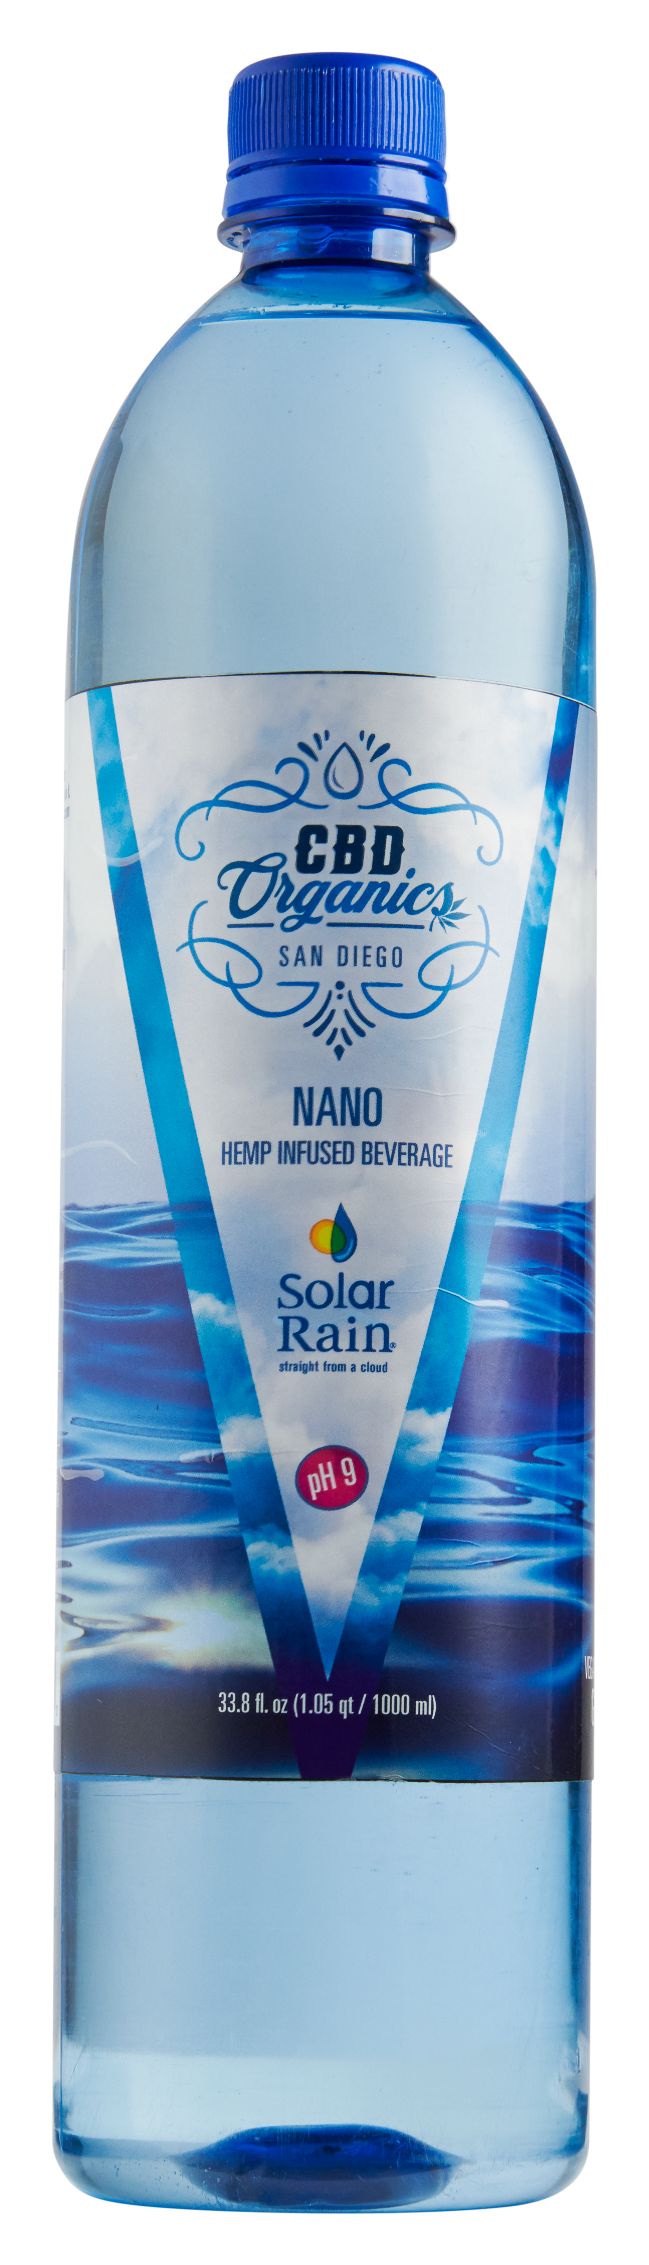 Nano CBD Water 12 pack 1000mL - CBD Organics